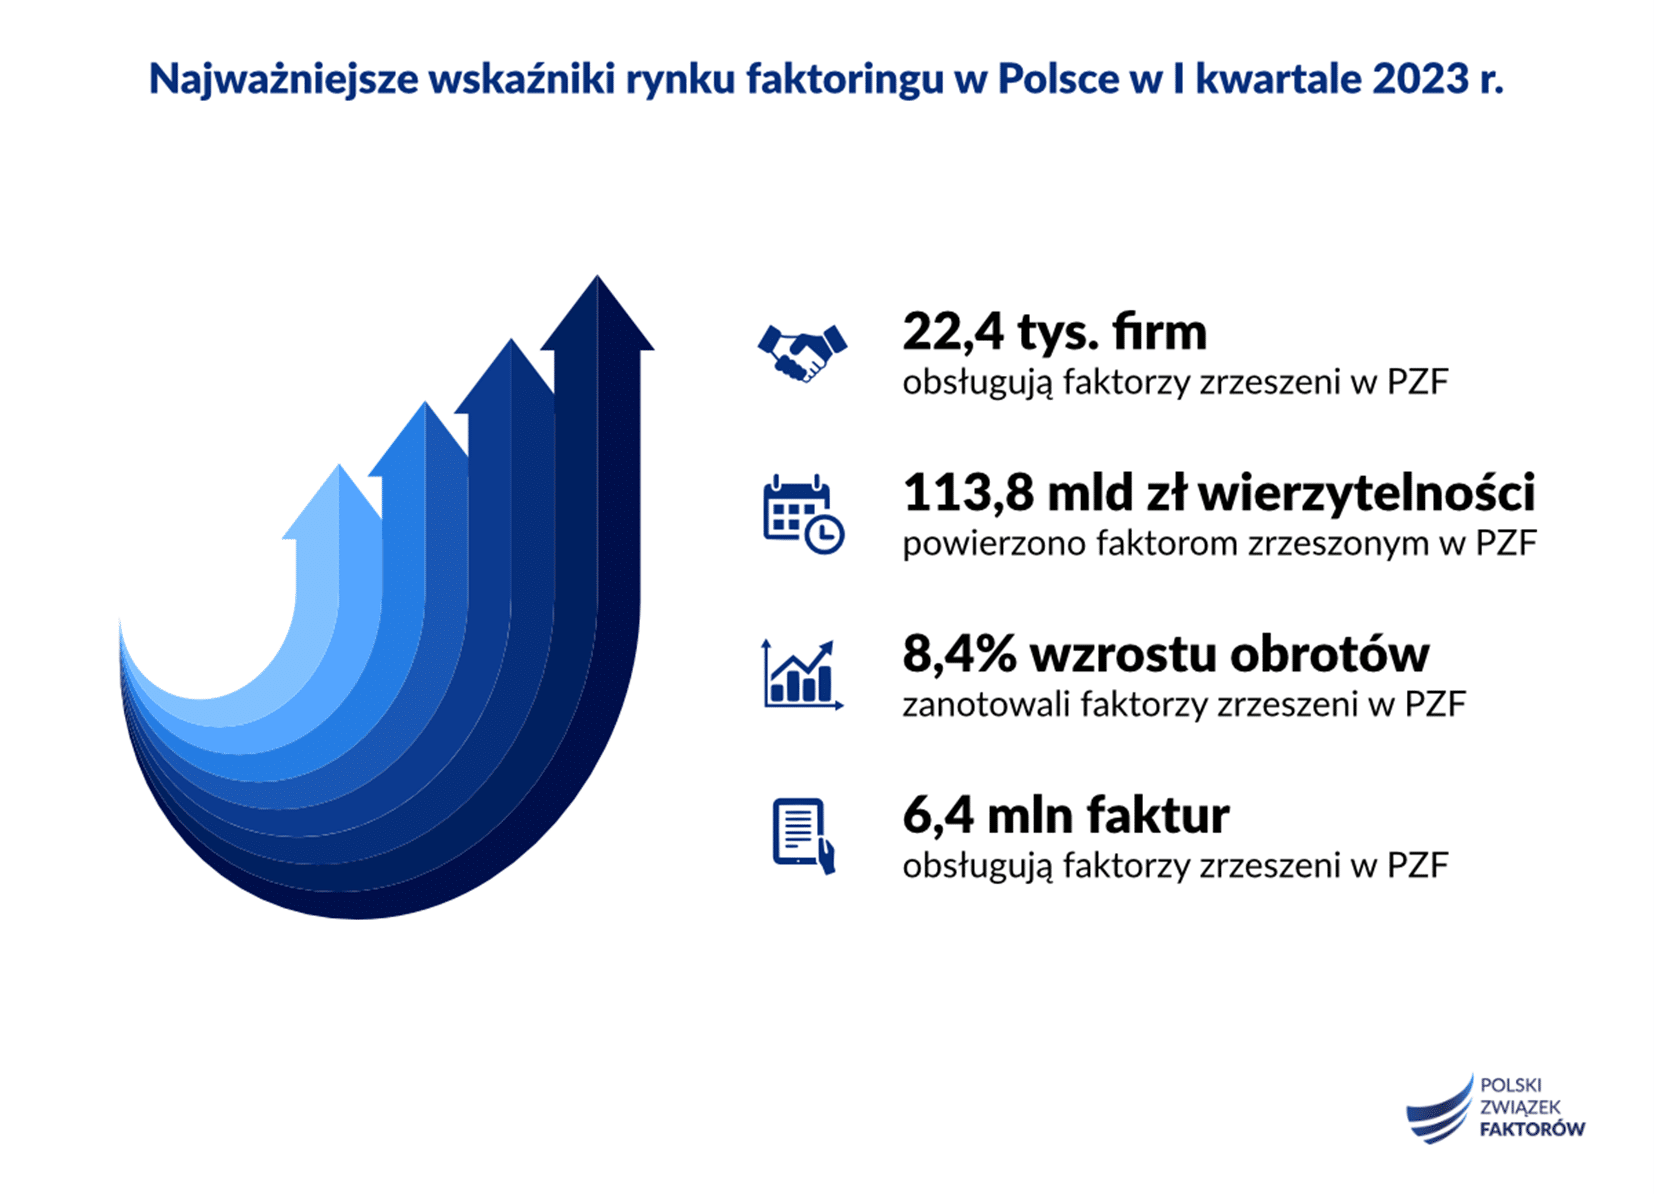 Polscy faktorzy sfinansowali w I kwartale 2023